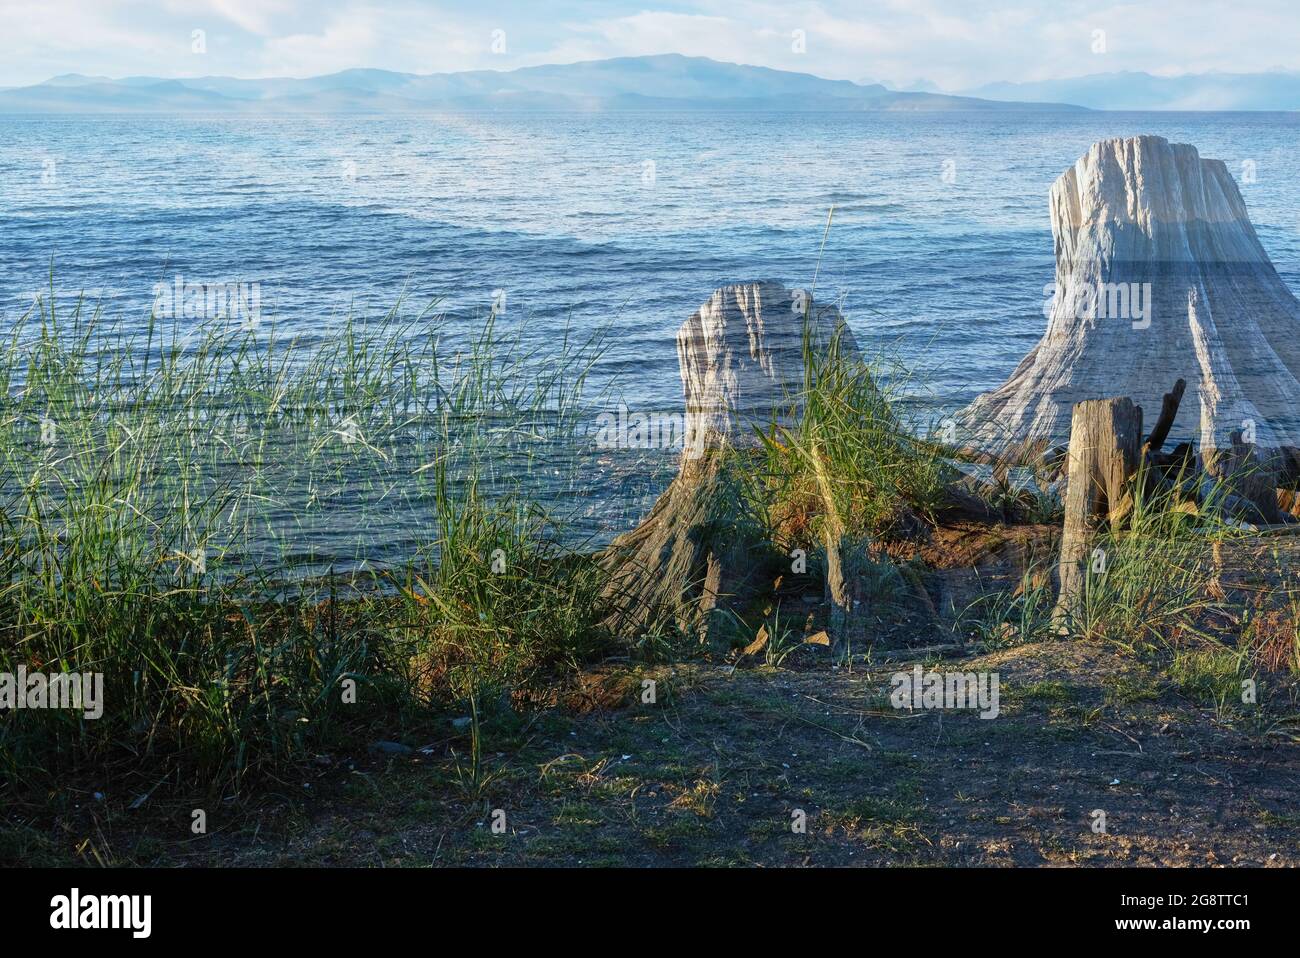 Imagen abstracta tomada con la doble exposición en la cámara superpone enormes tocones de árboles con las aguas onduladas del Estrecho de Georgia y las islas distantes. Foto de stock